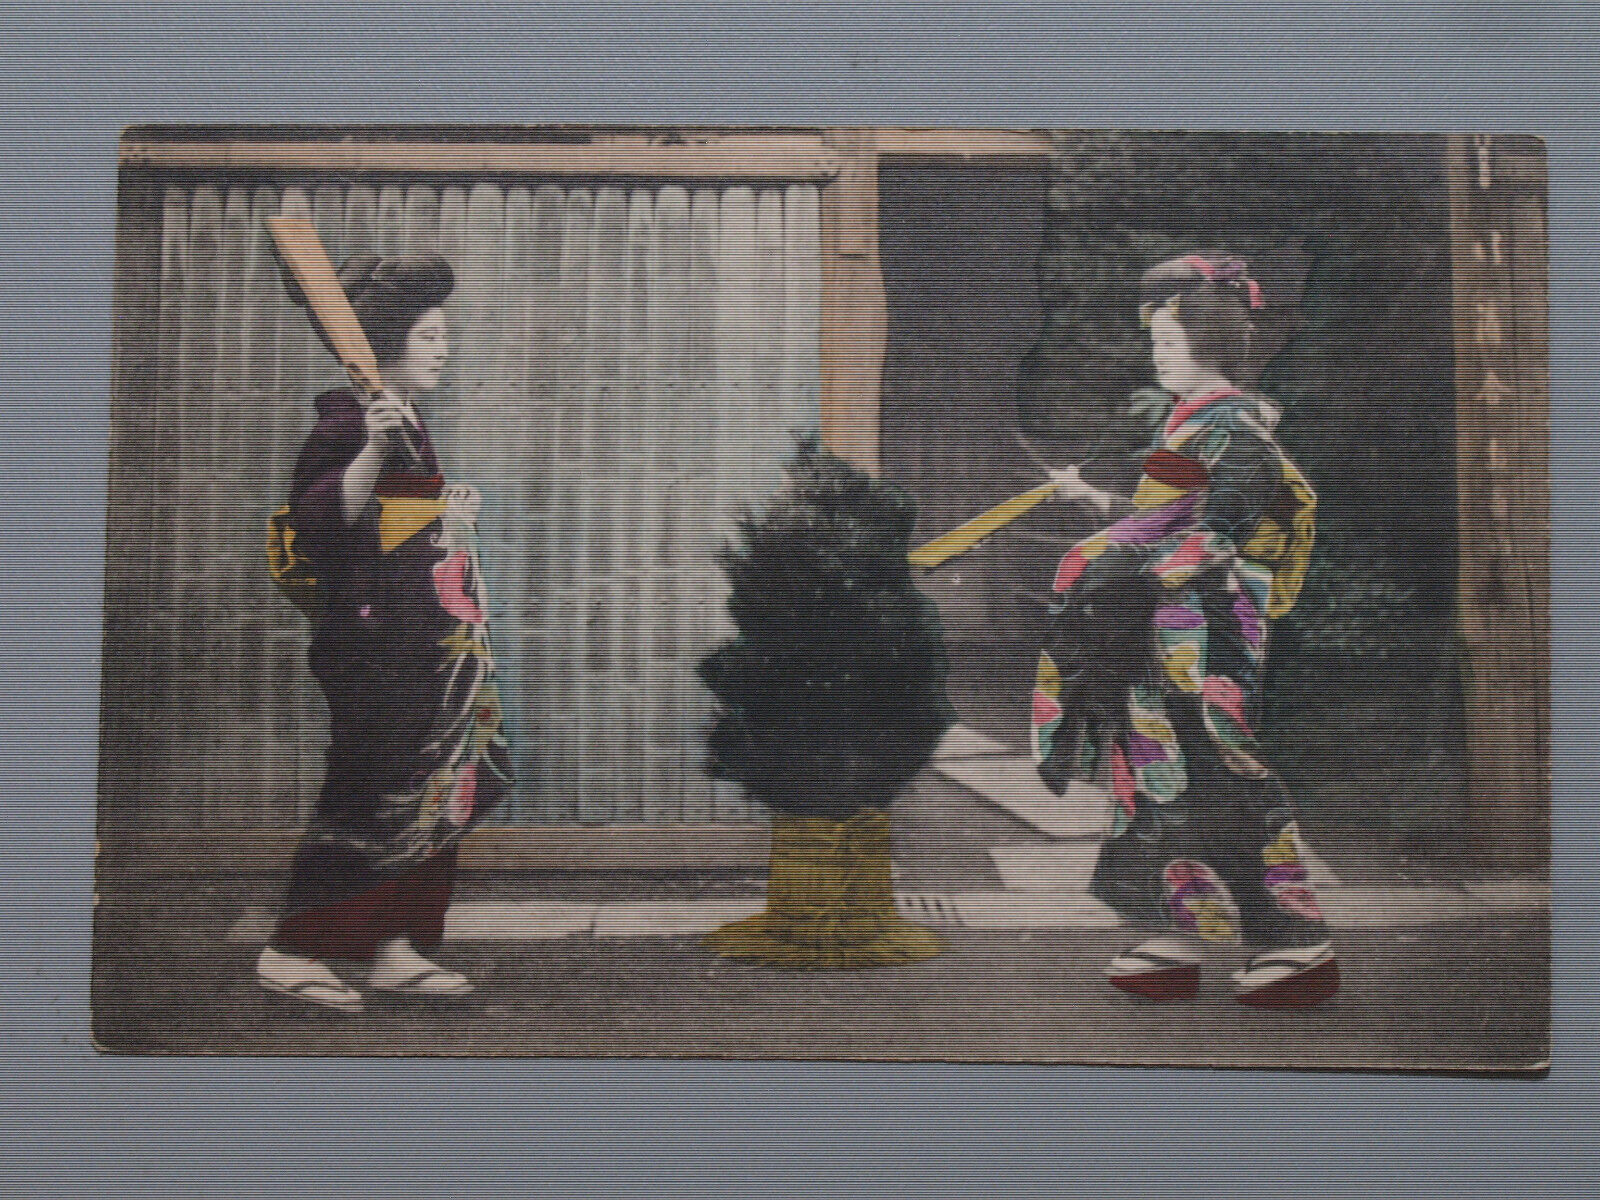 Japan Two Young Geisha Women Kimonos Hagoita Wooden Paddle Game Vintage Postcard